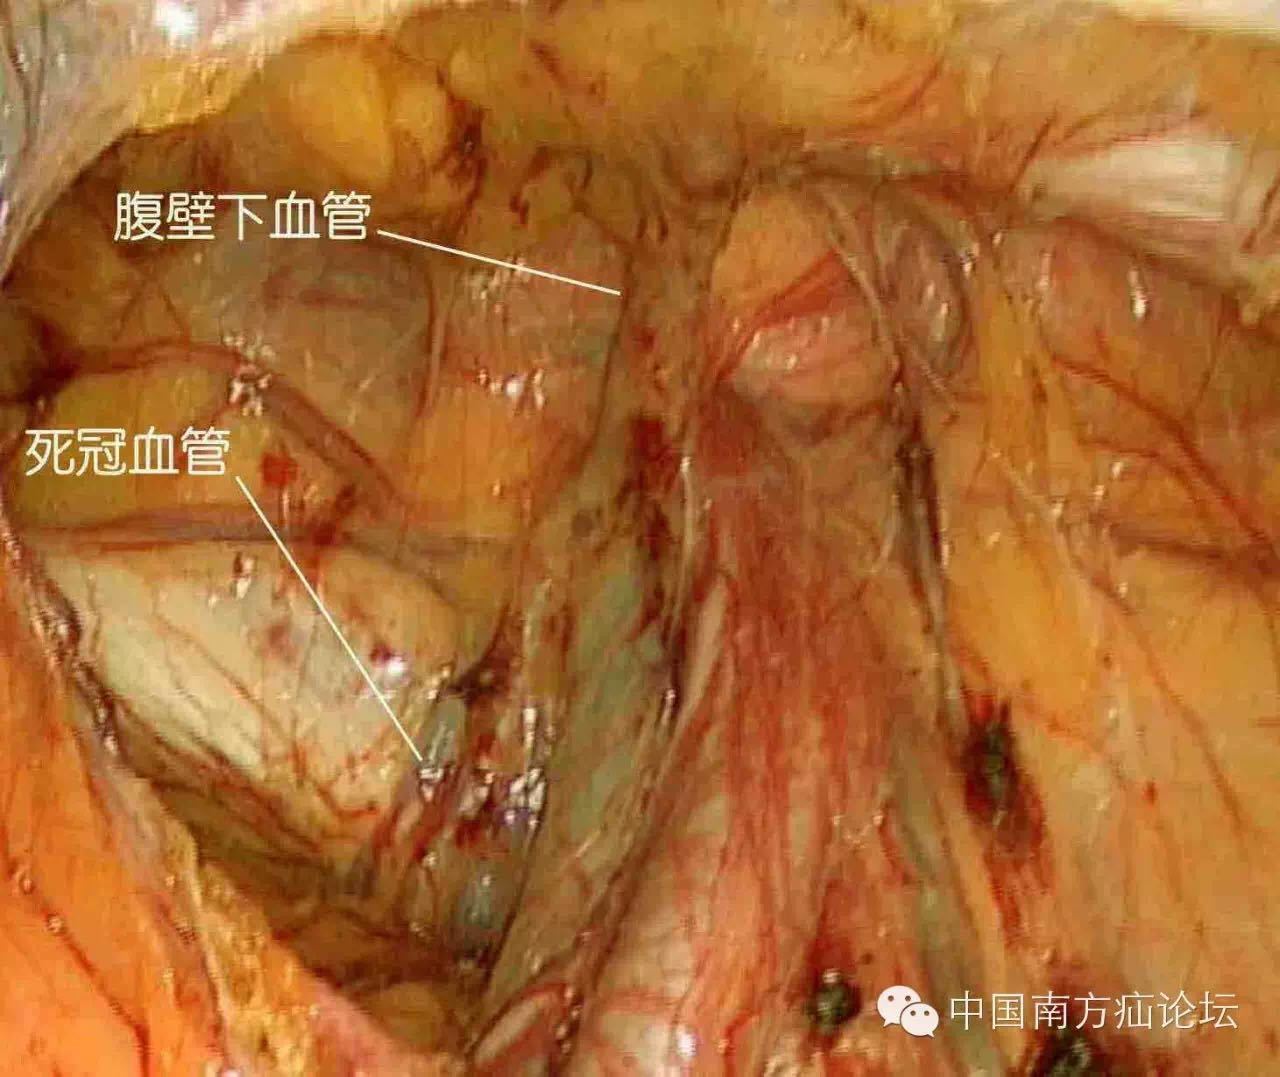 基础腔镜下腹股沟解剖三危险与坑